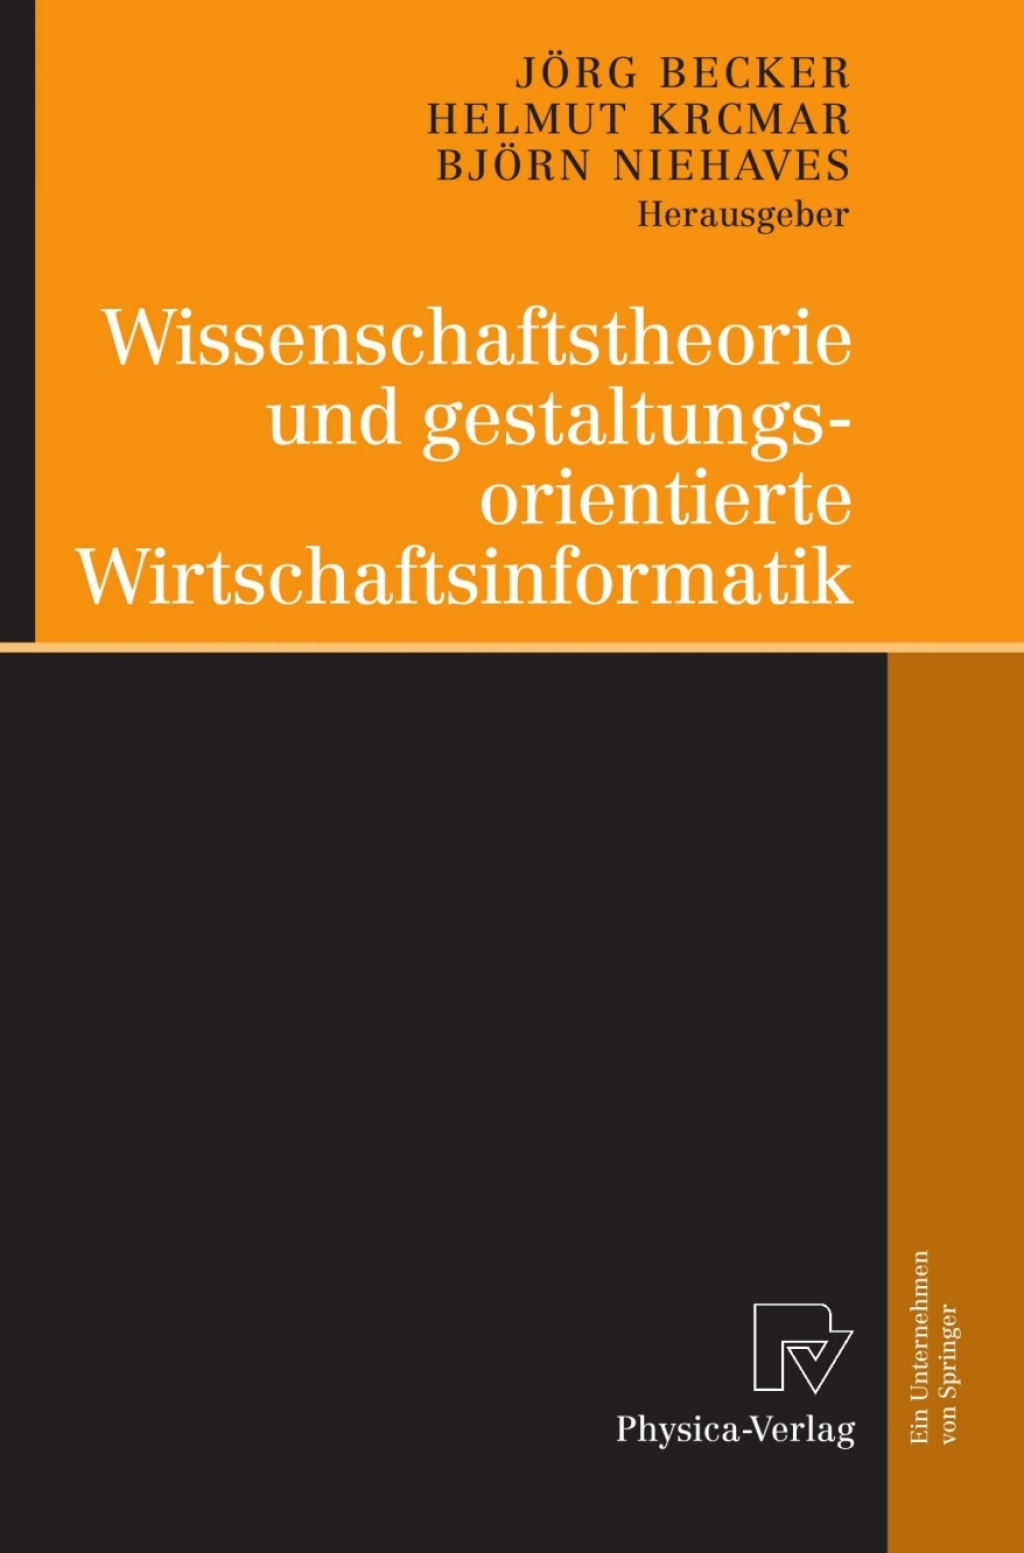 ISBN 9783790823356 product image for Wissenschaftstheorie und gestaltungsorientierte Wirtschaftsinformatik - 1st Edit | upcitemdb.com